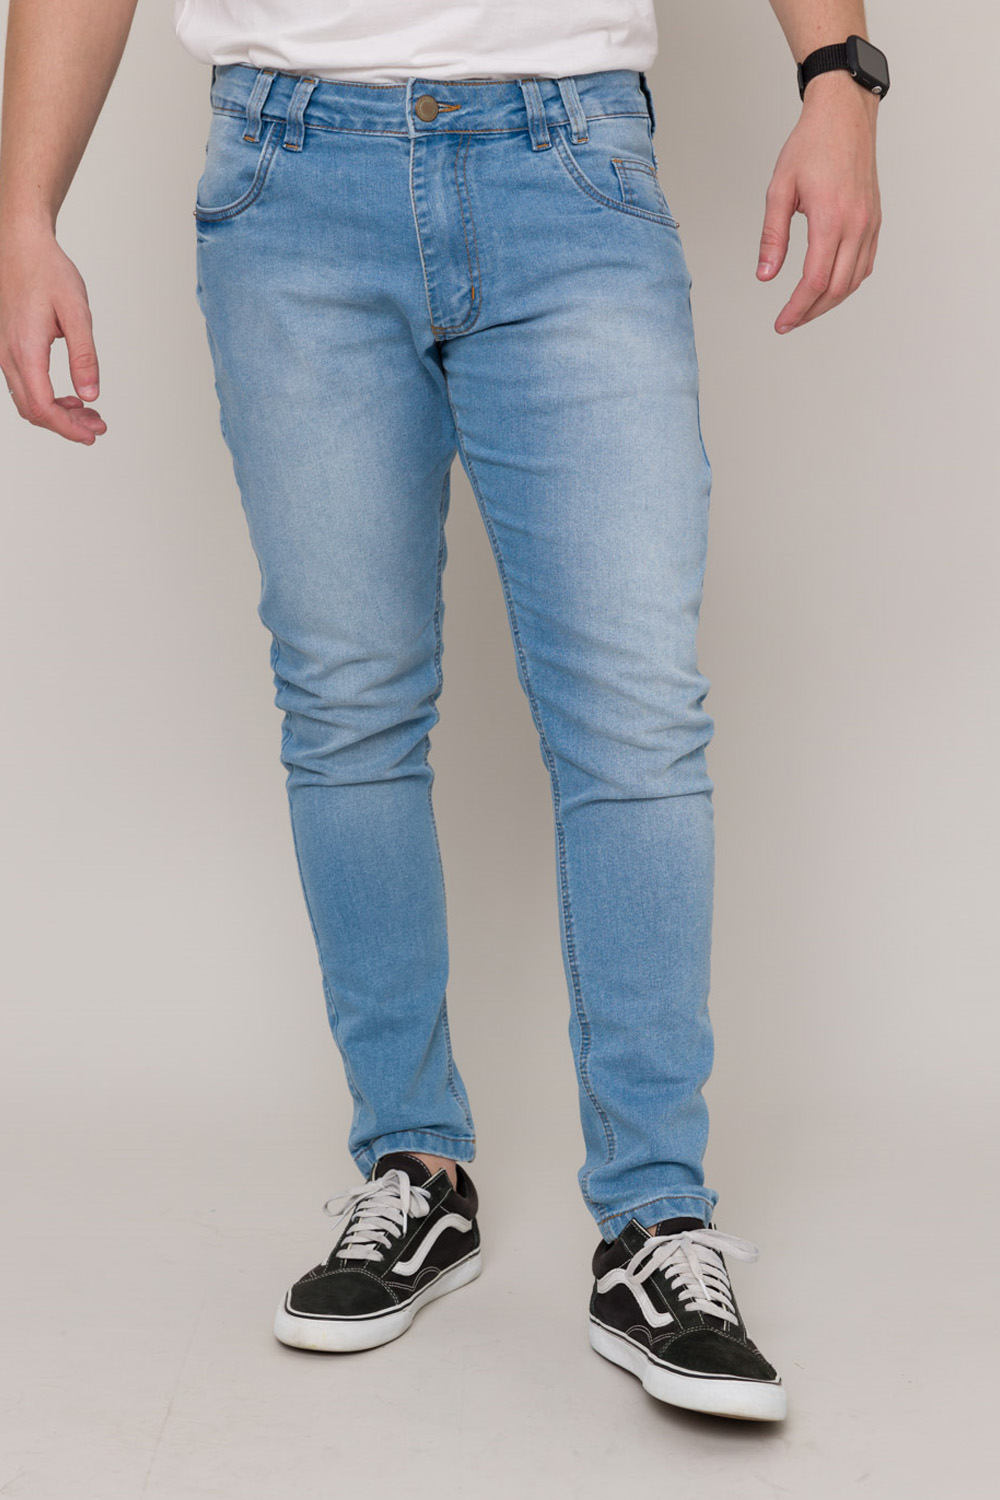 Calça Jeans Skinny Alex - Jeans Claro 1